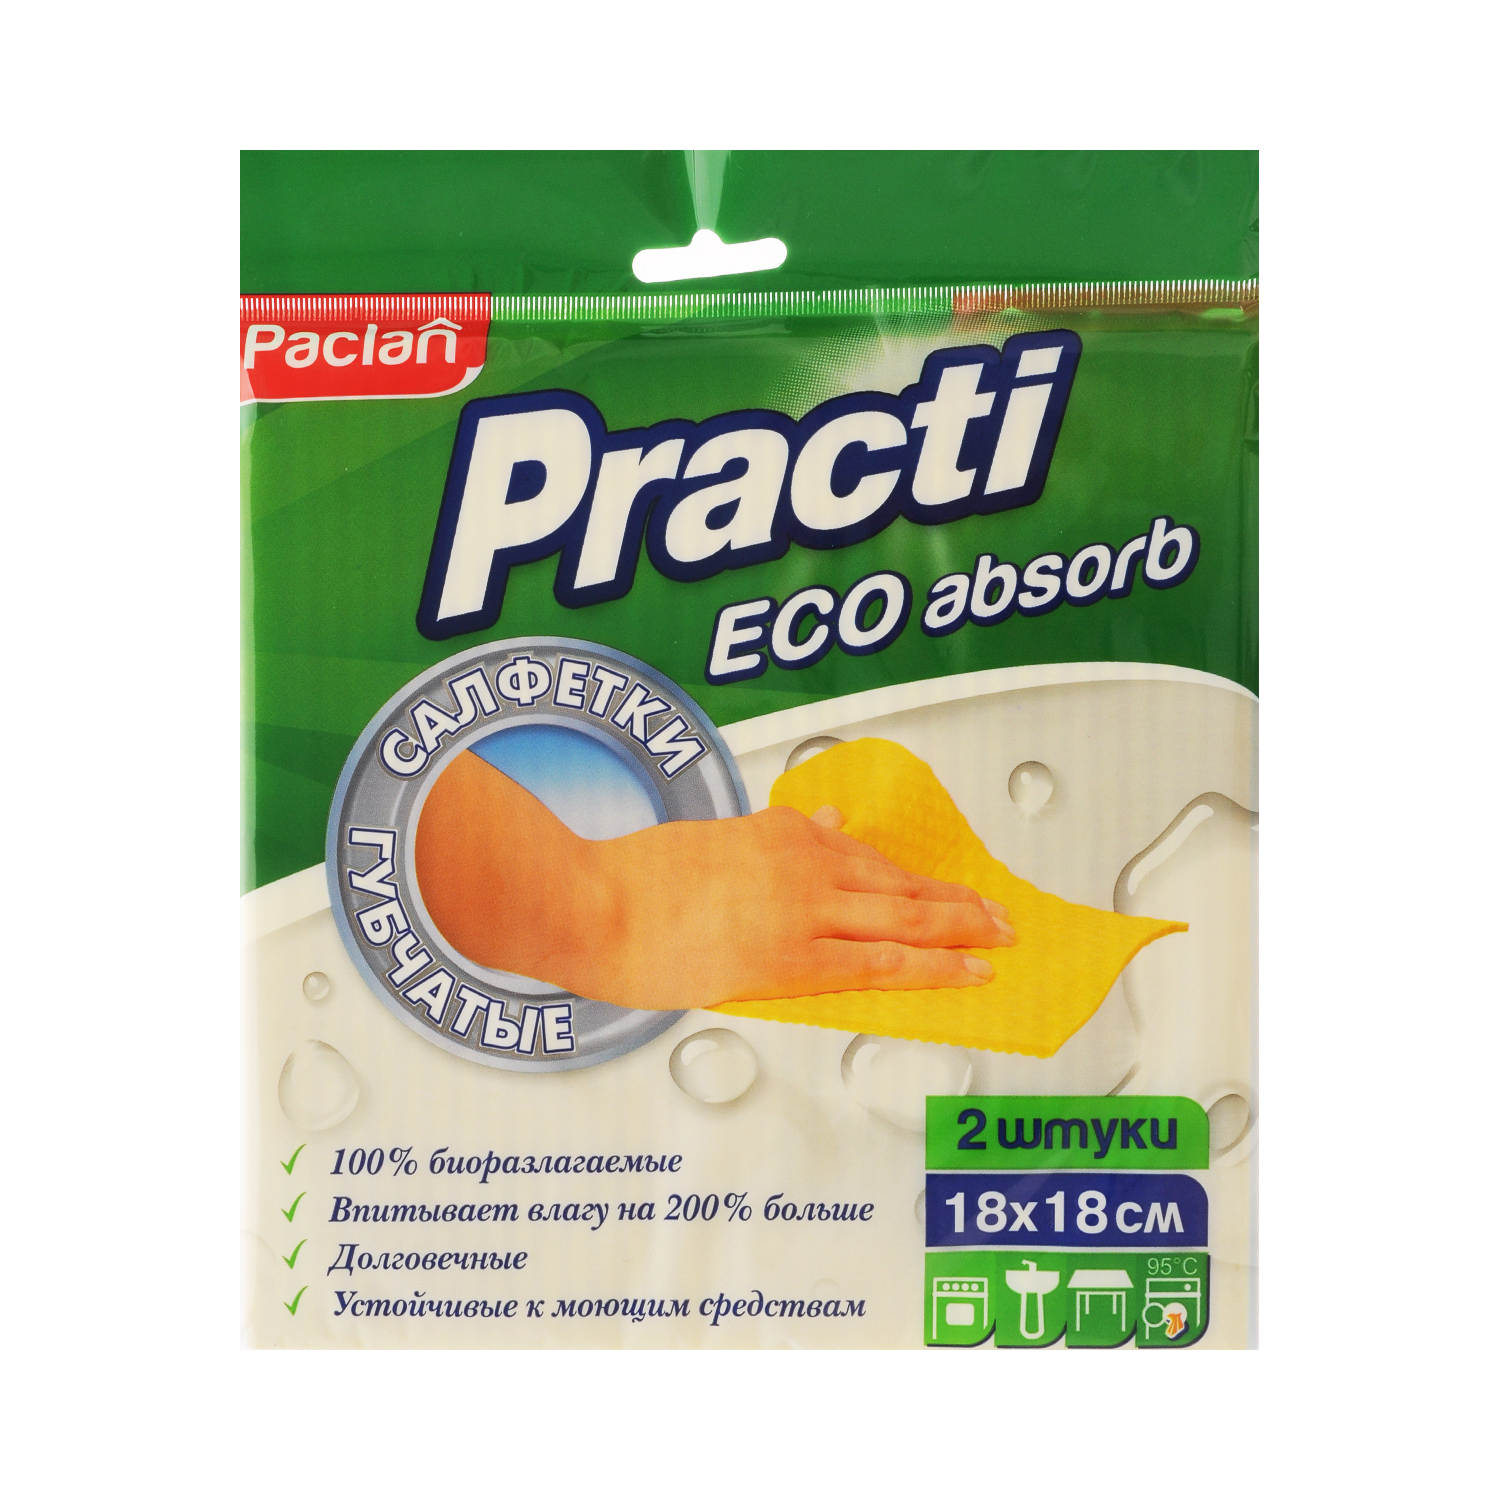 Набор салфеток для уборки Paclan Practi губчатые 2 шт пленка paclan xxl универсальная 50м x 29см